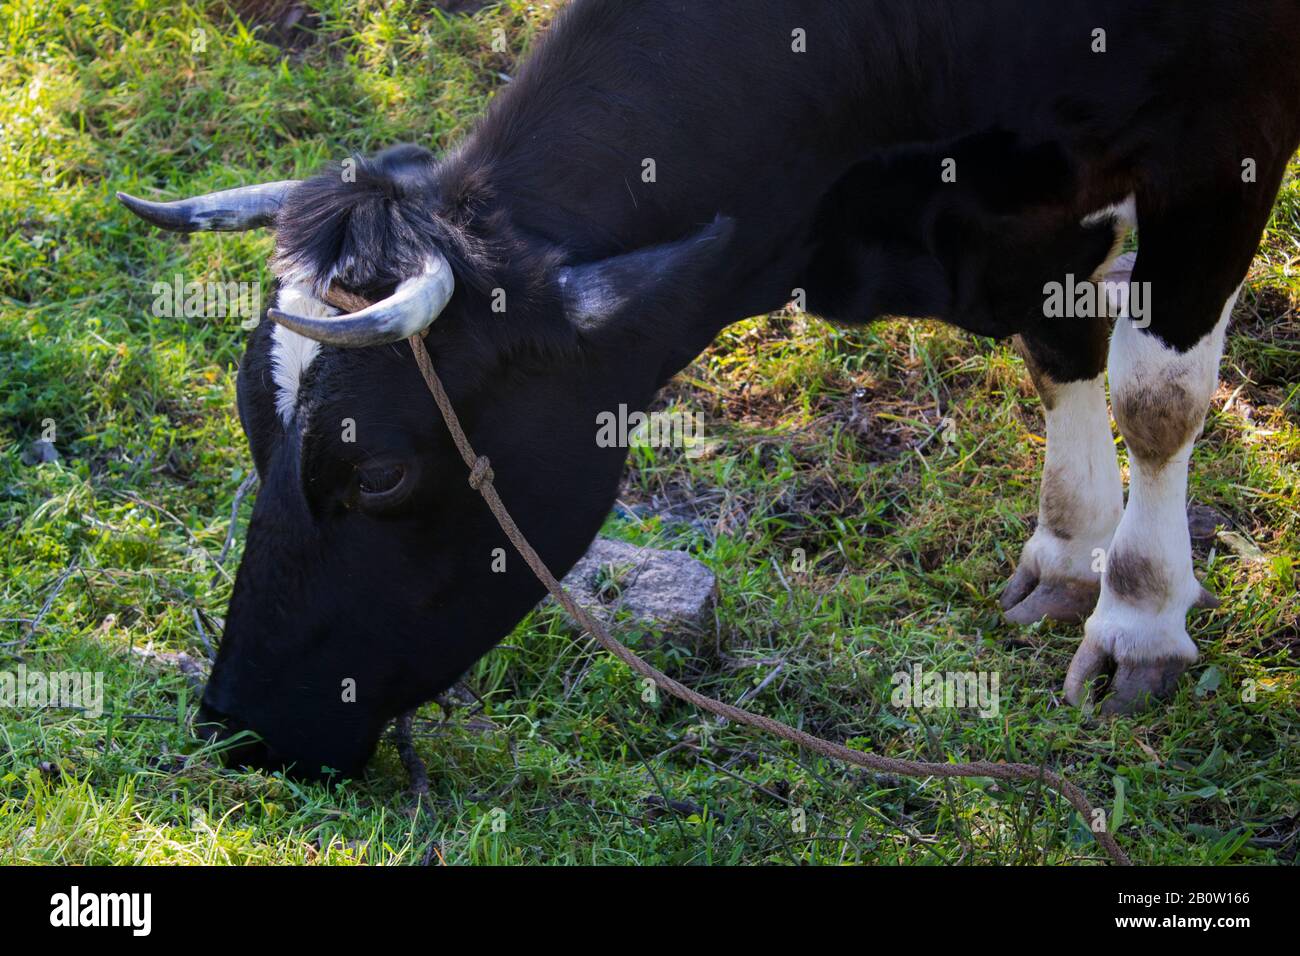 Ritratto a metà corpo di una mucca che pascolano erba verde, legata da una corda, calma Foto Stock